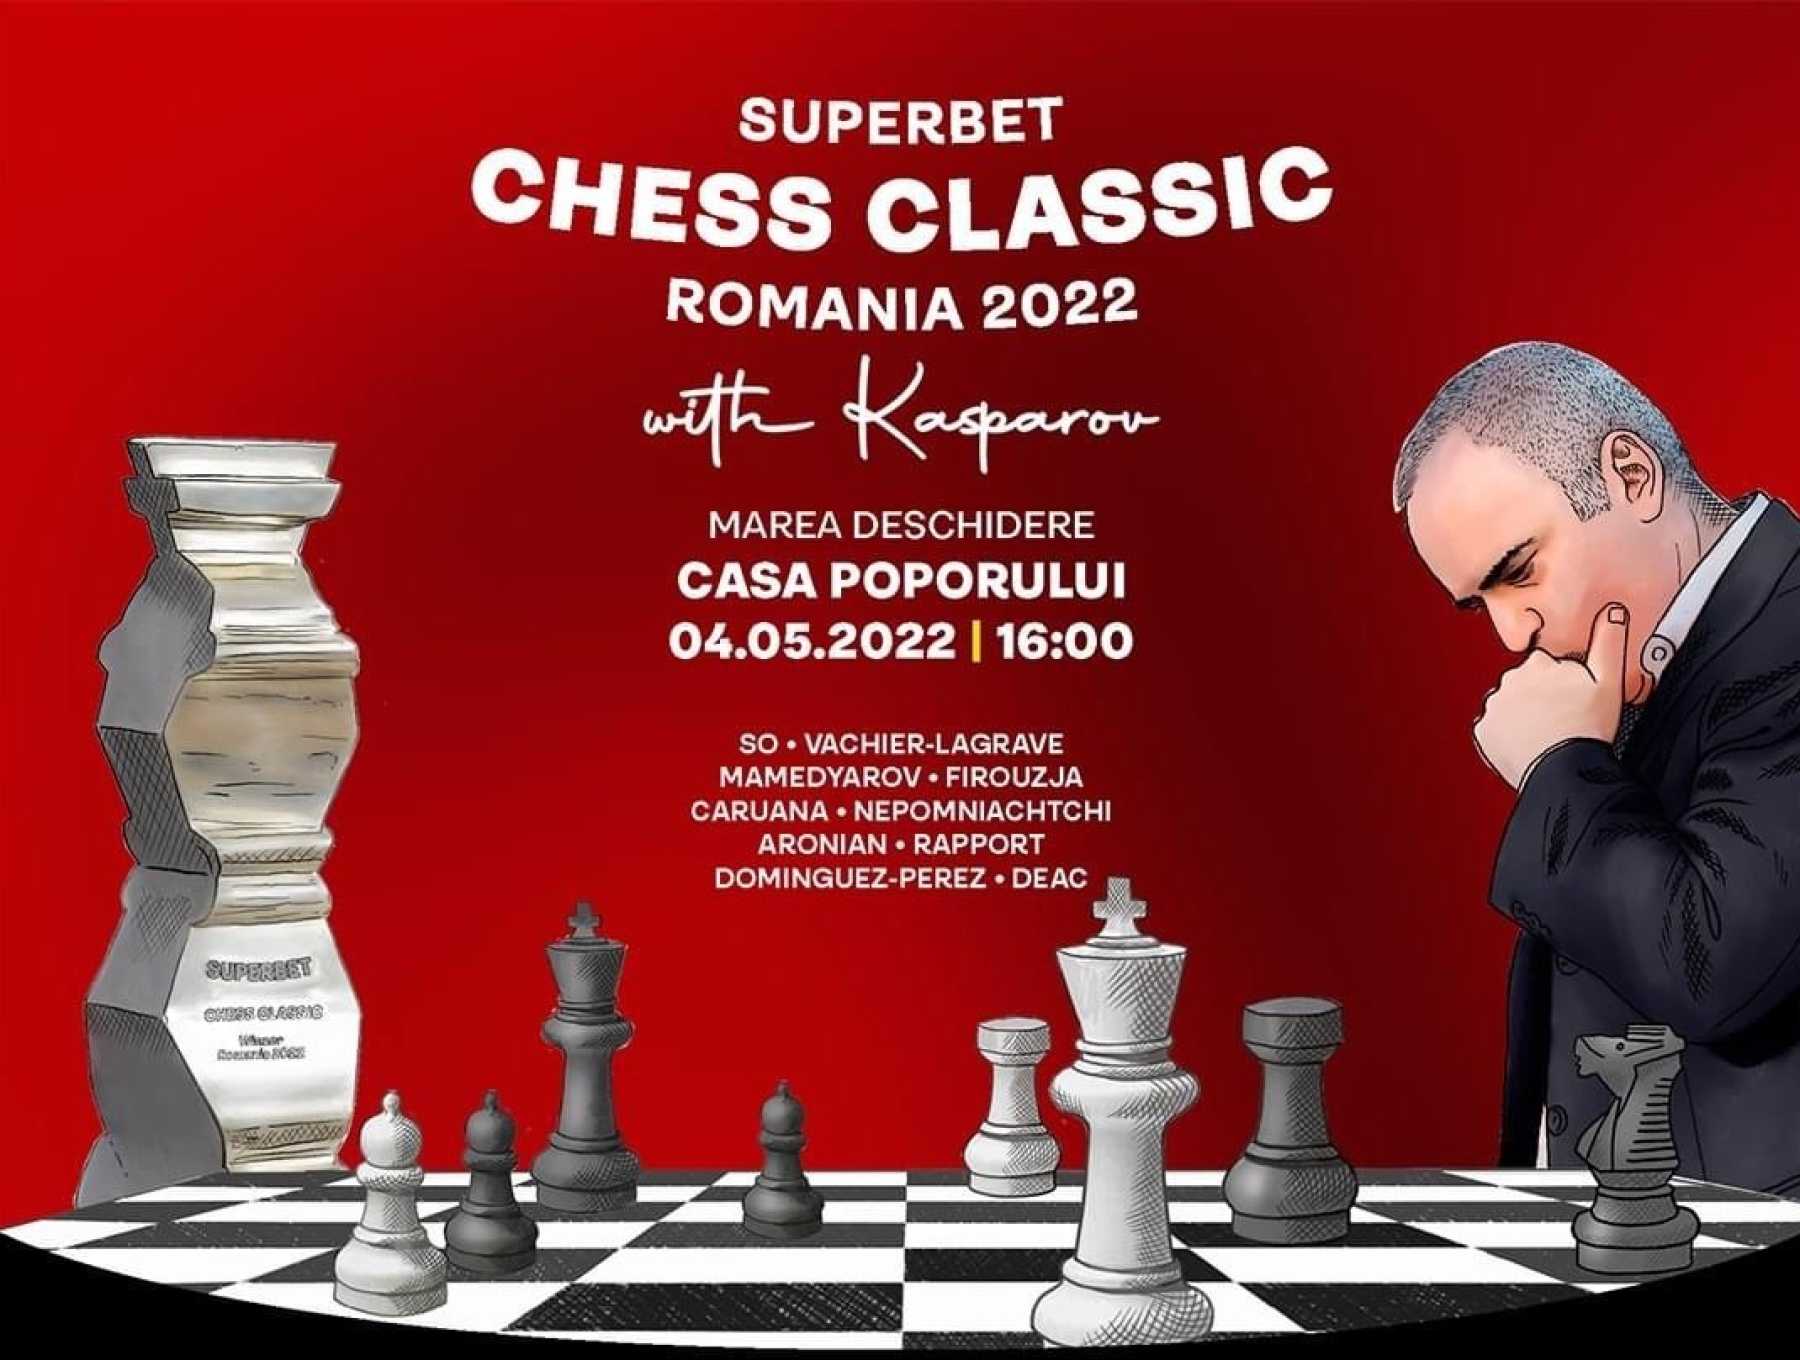 One United Properties susține Superbet Chess Classic Romania 2022, eveniment cu personalități marcante din lumea șahului, precum Garry Kasparov